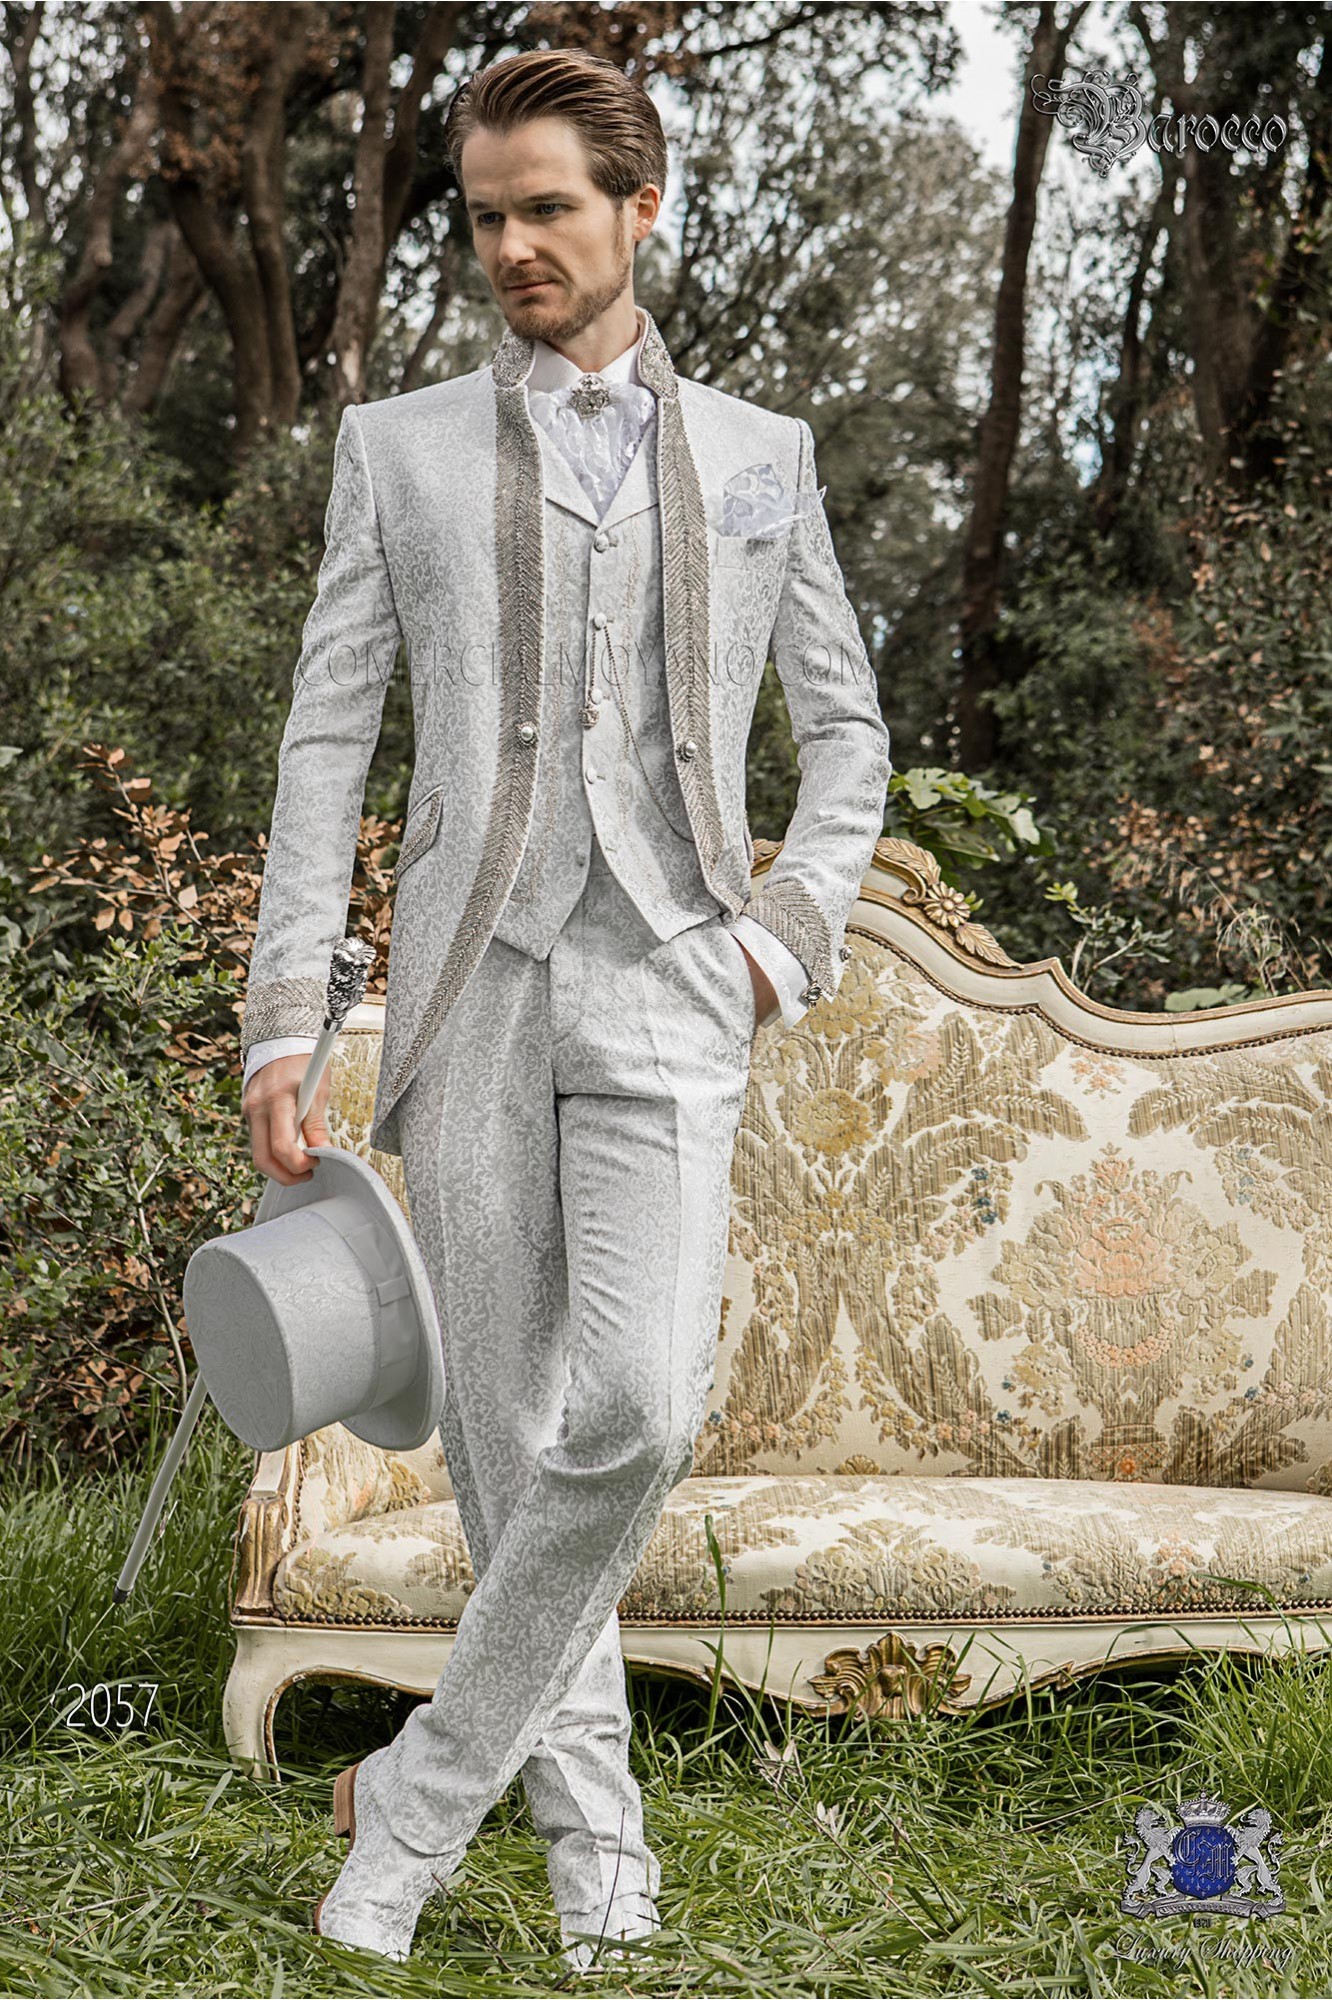 vintage Mao collar frock coat in pearl gray floral brocade fabric with rhinestones model 2057 Mario Moyano